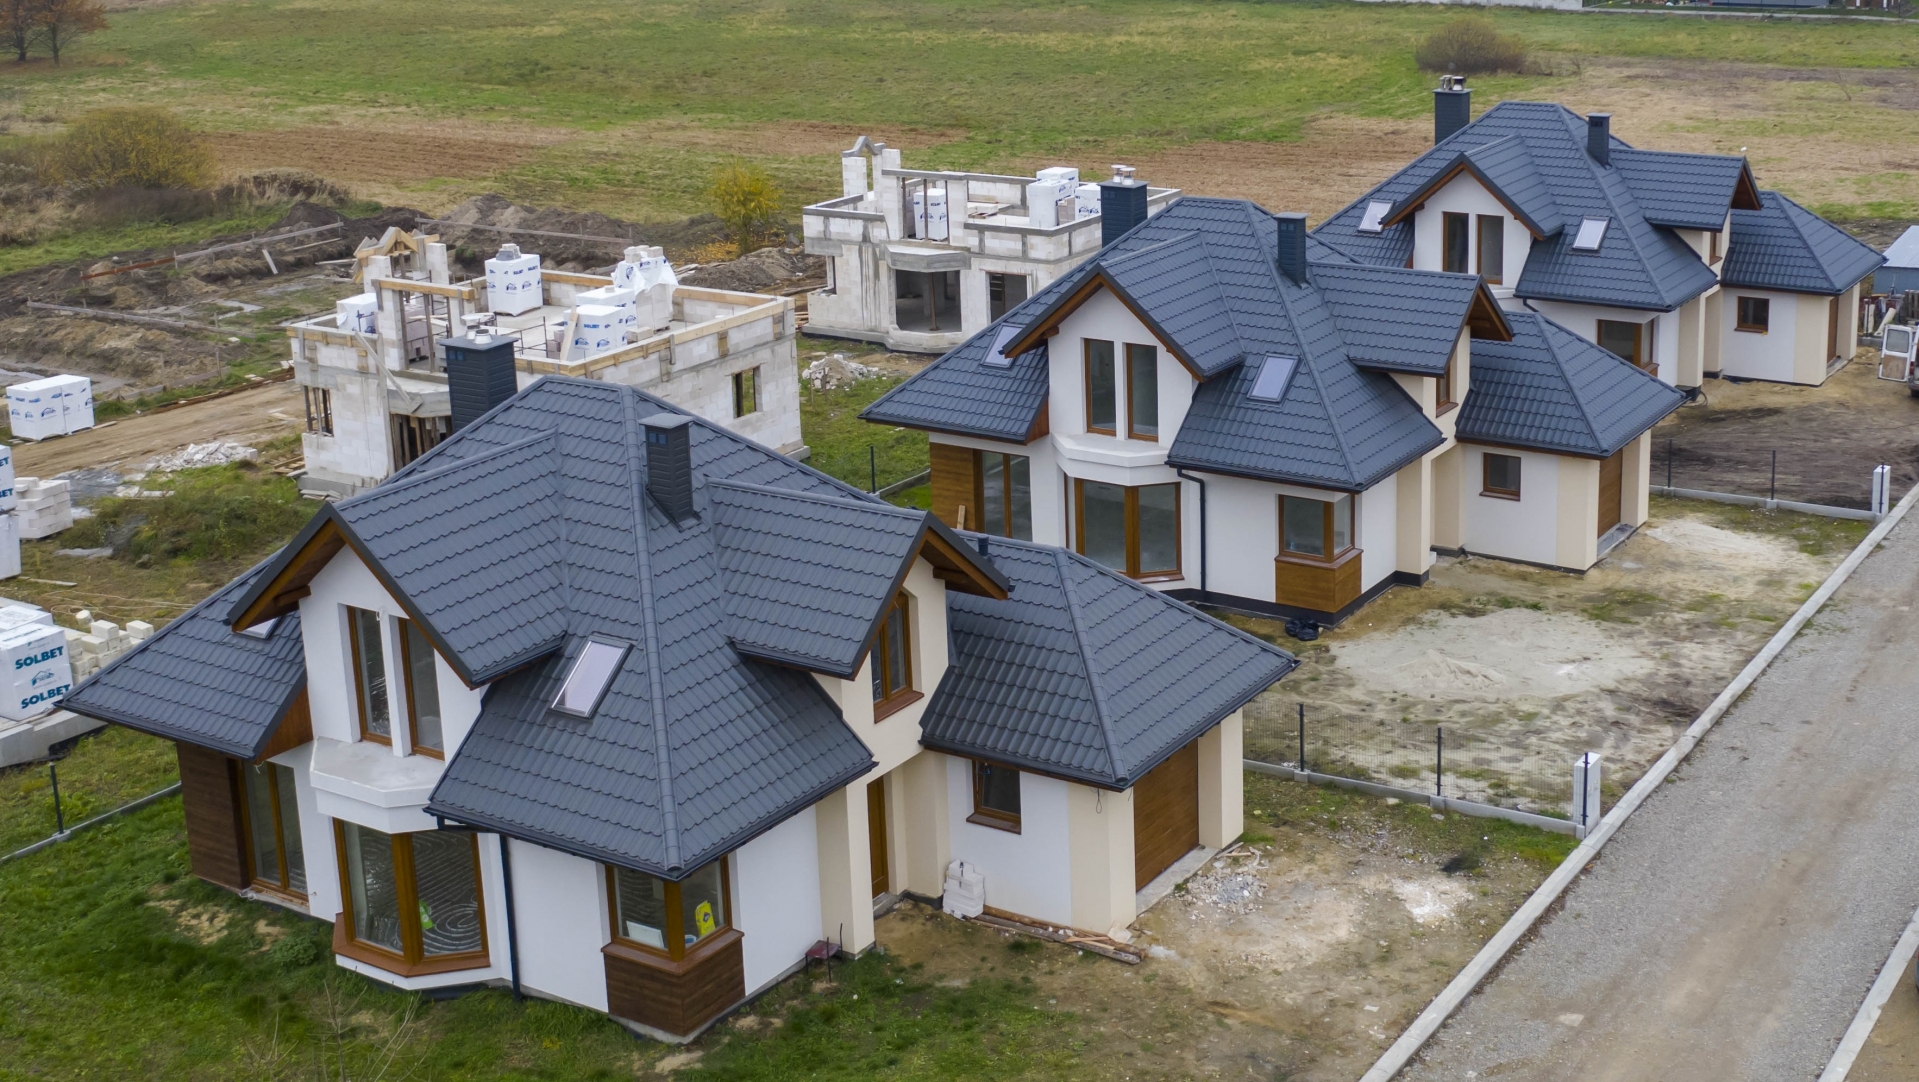 Osiedle domów jednorodzinnych w Głogowie Małopolskim